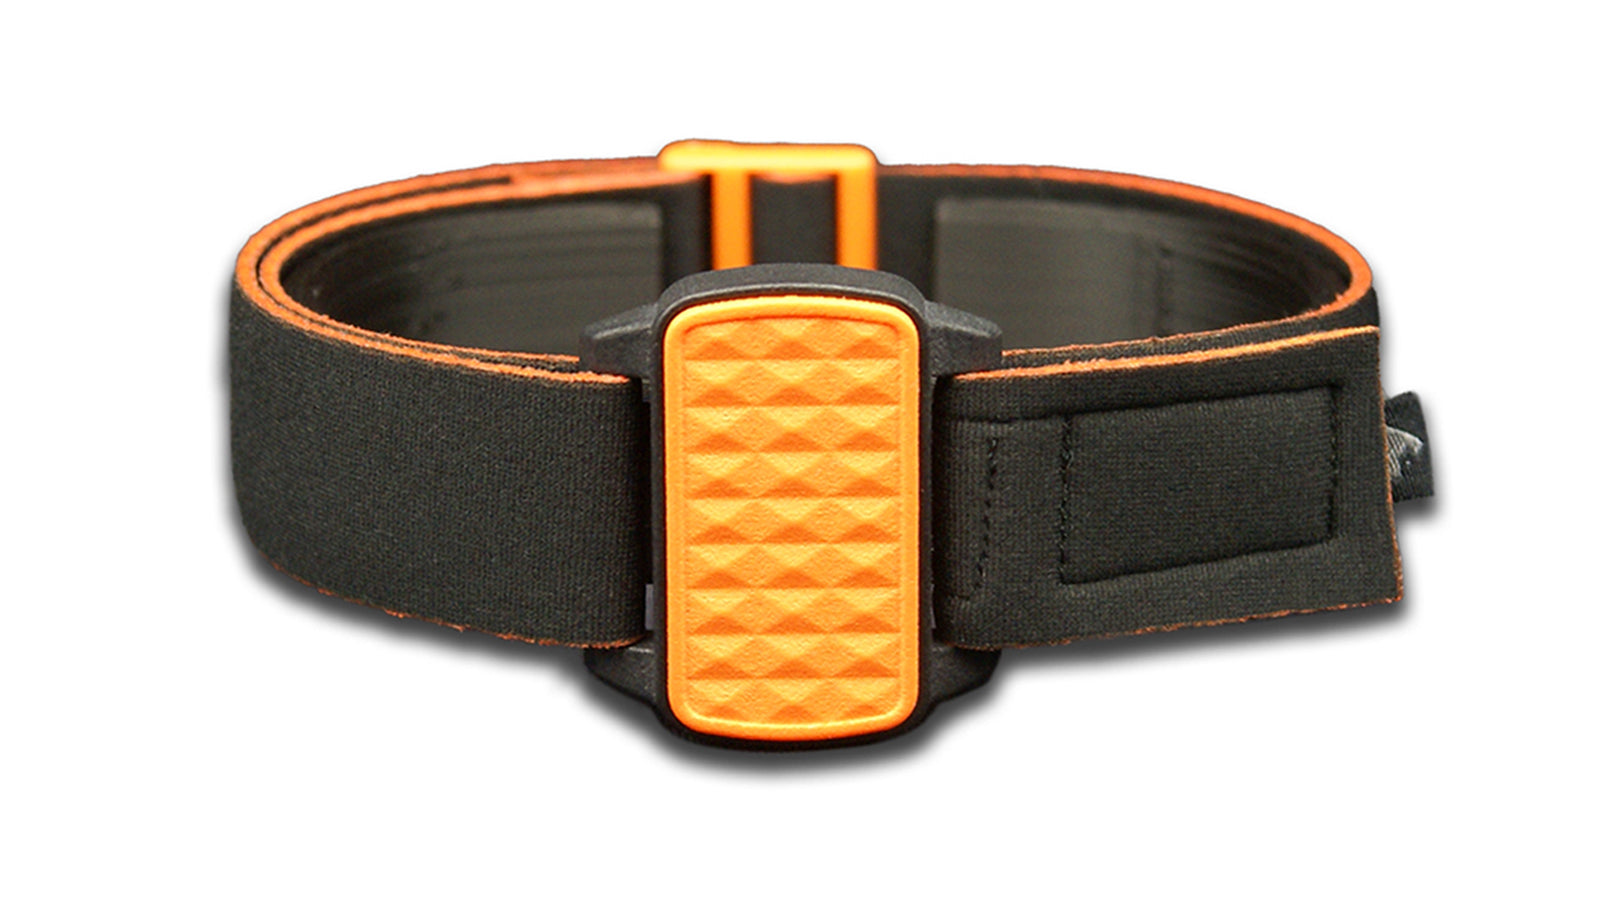 Dexband armband cover for Dexcom G6 with black strap and orange pyramids cover.